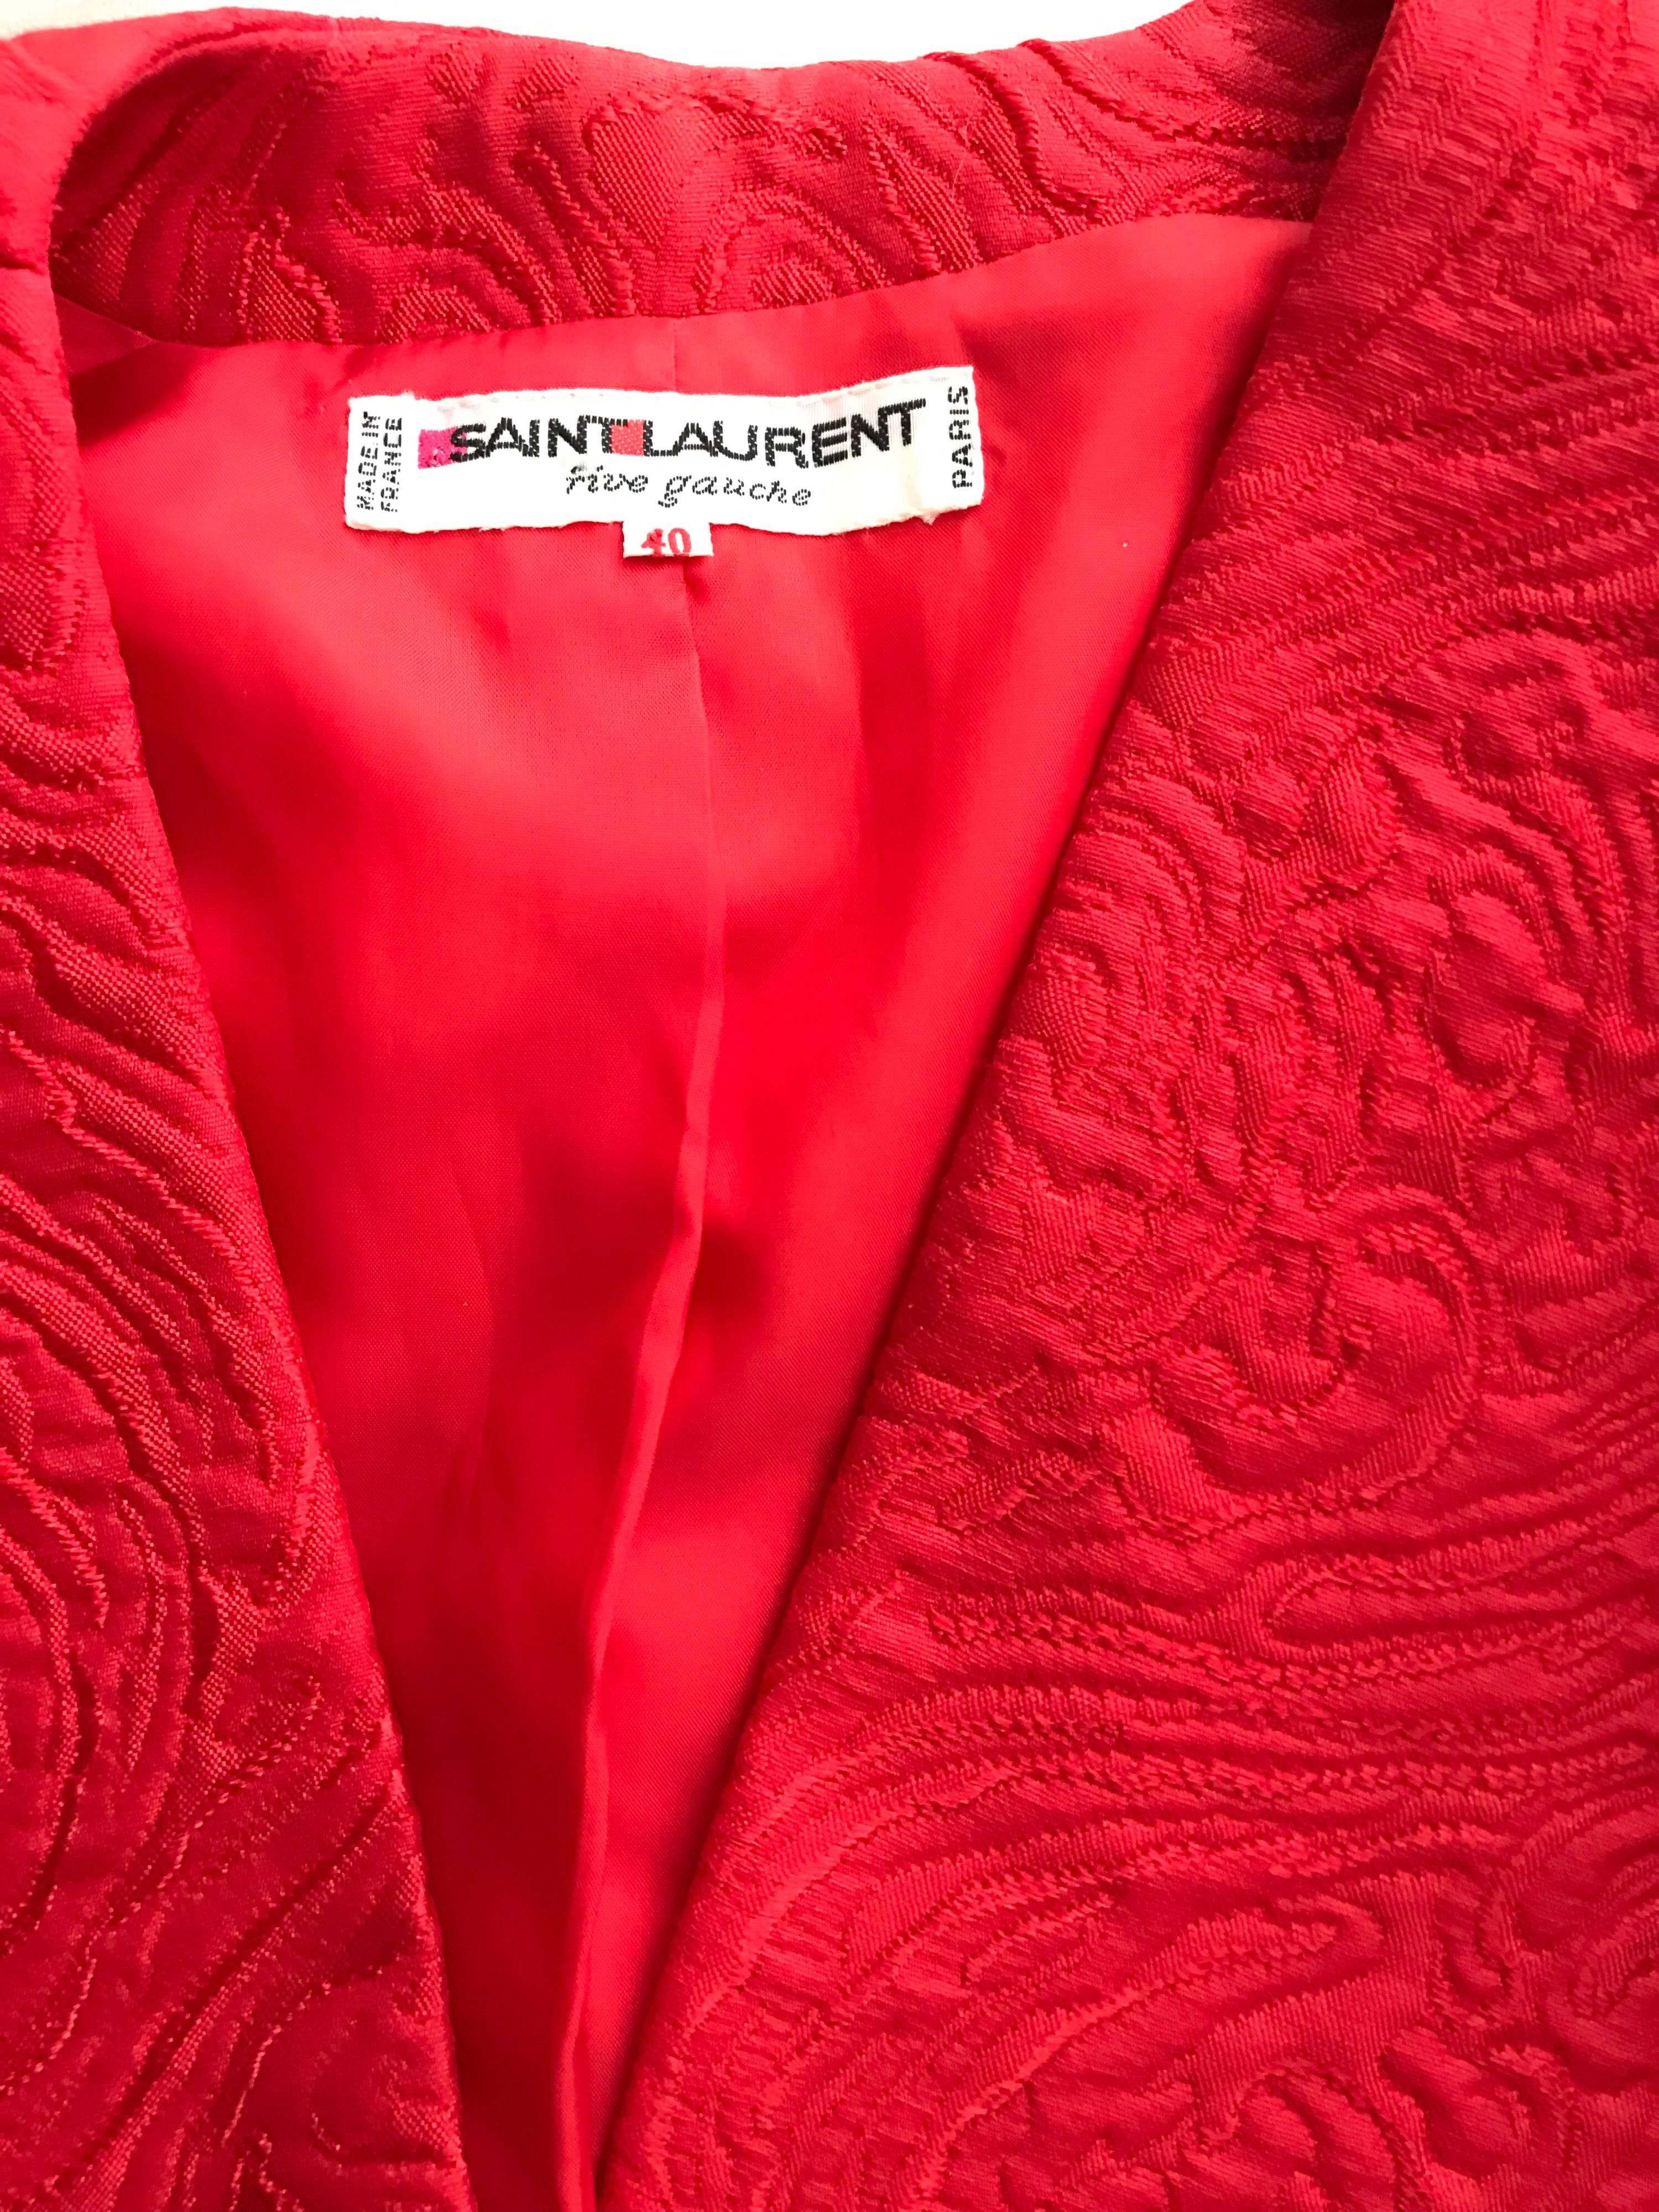 red bolero jacket